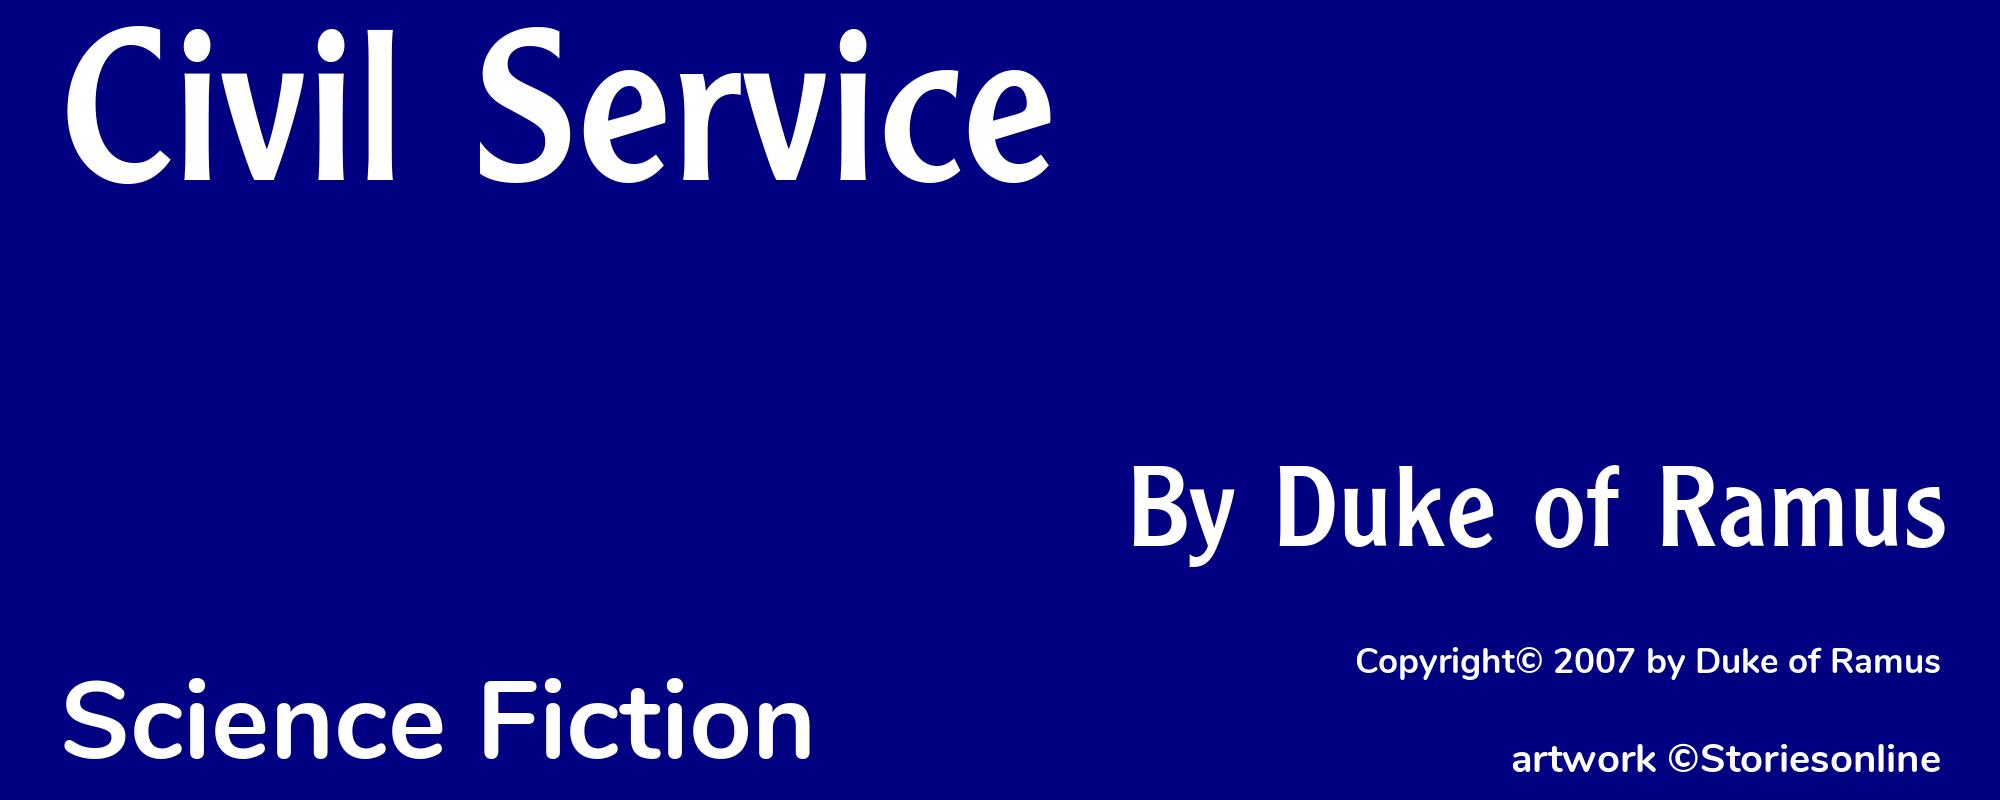 Civil Service - Cover